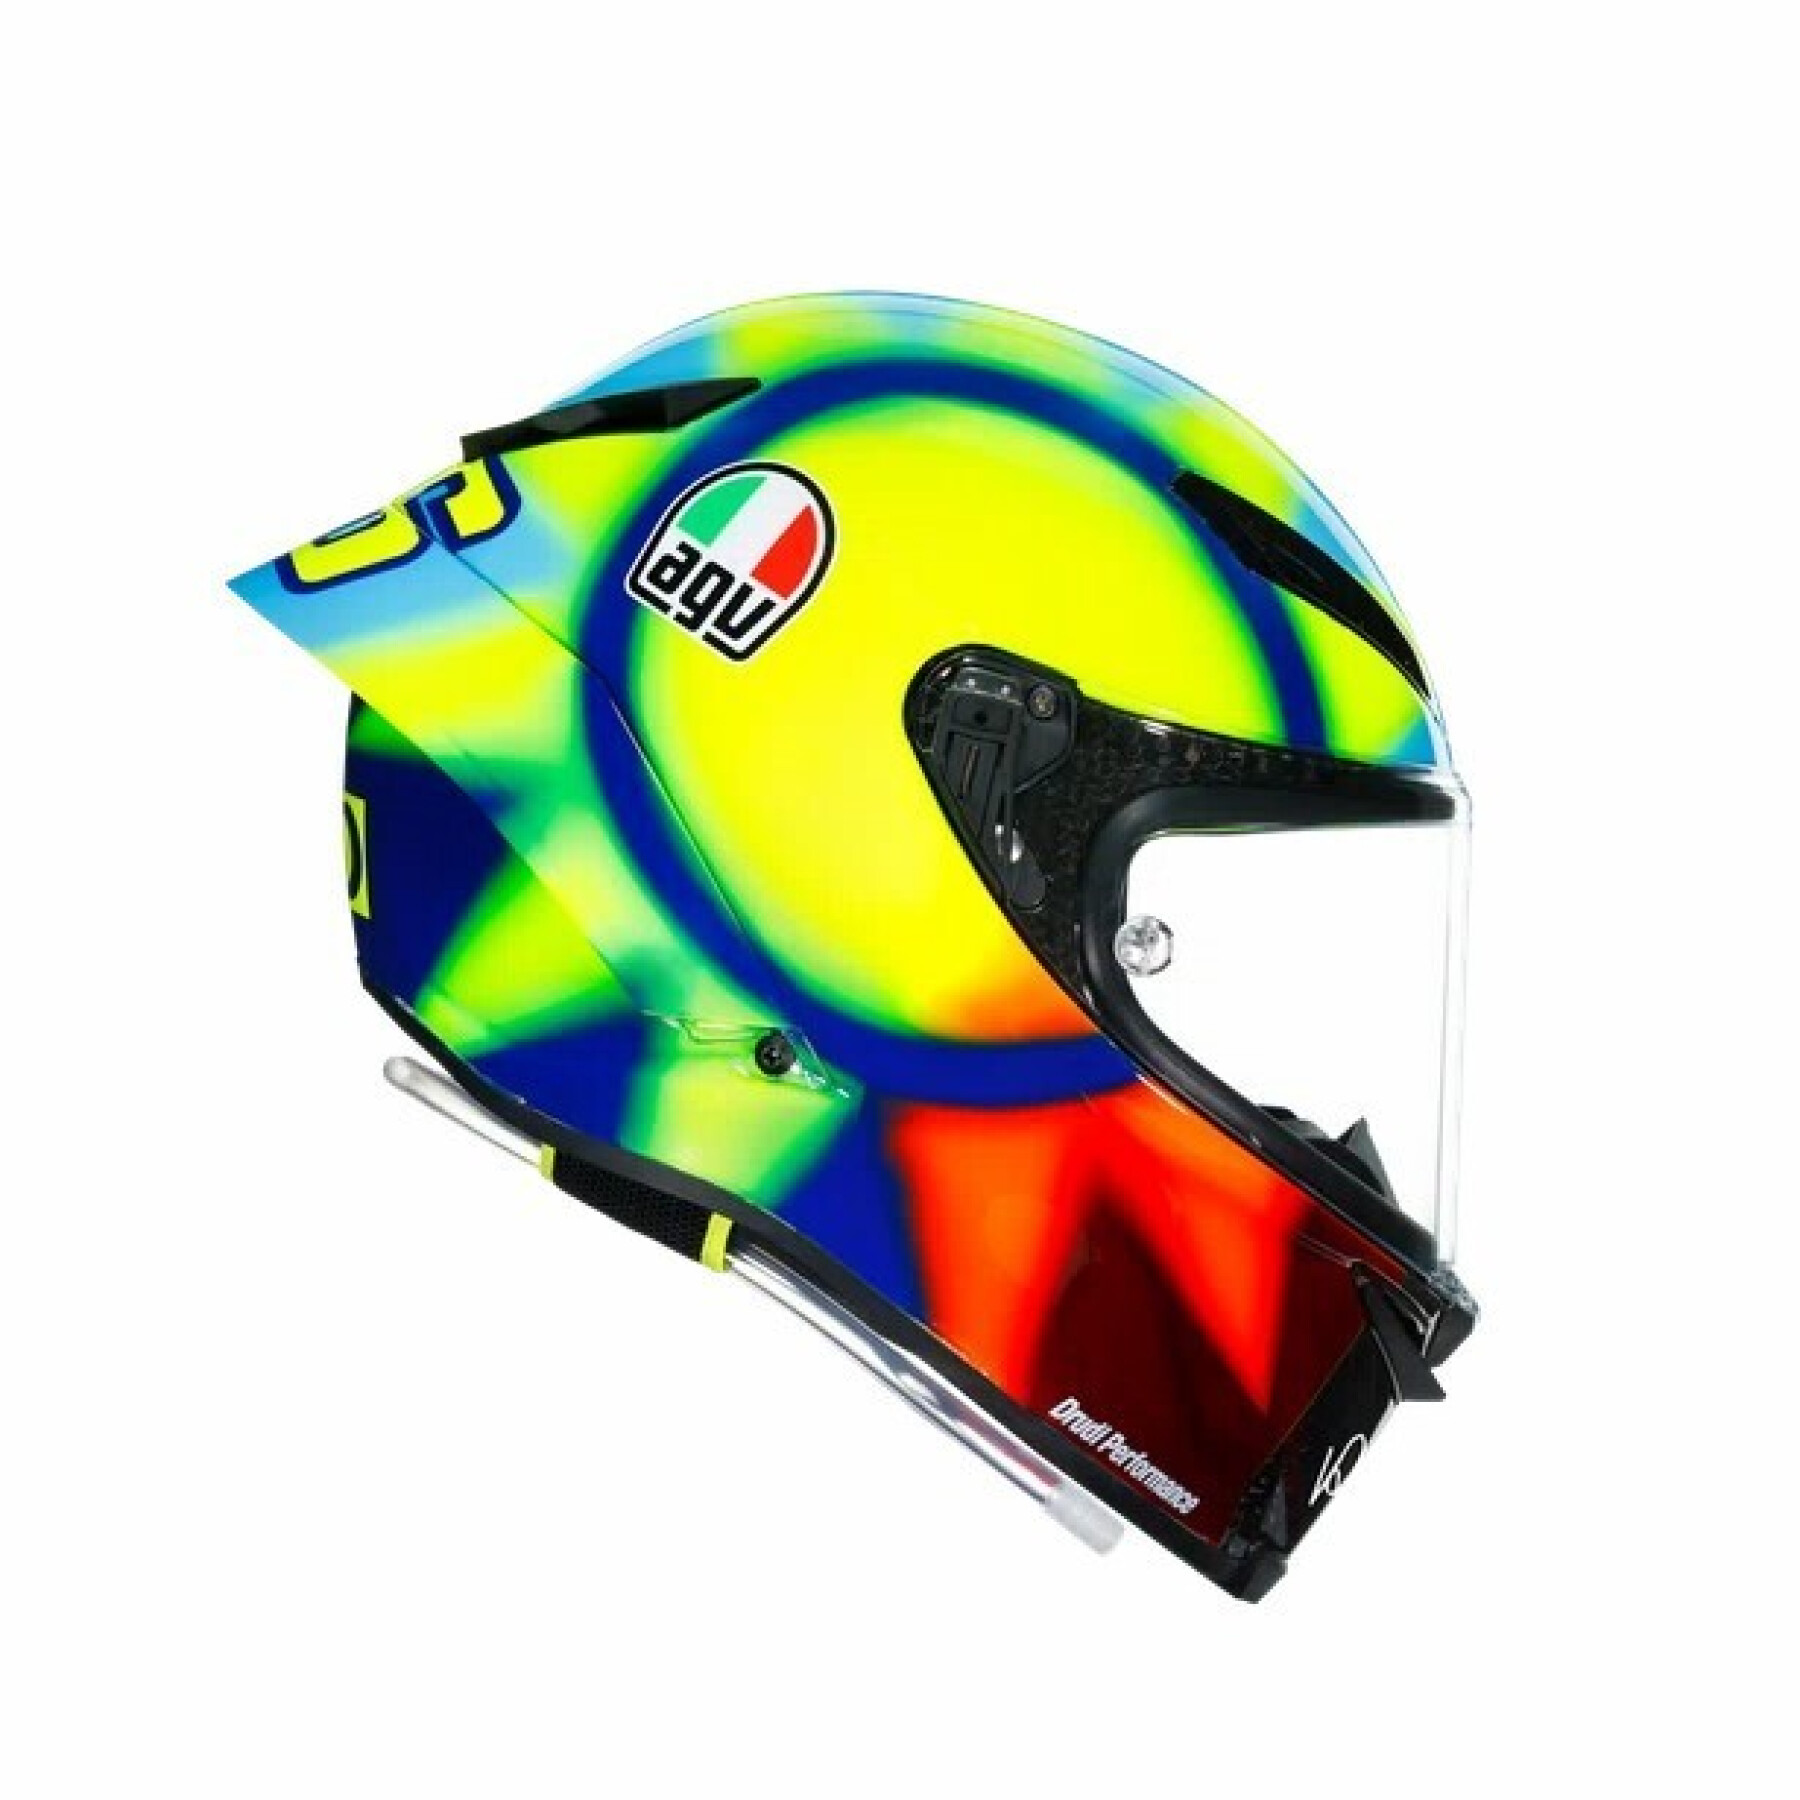 Full face motorcycle helmet AGV Pista RR Dot Soleluna 2021